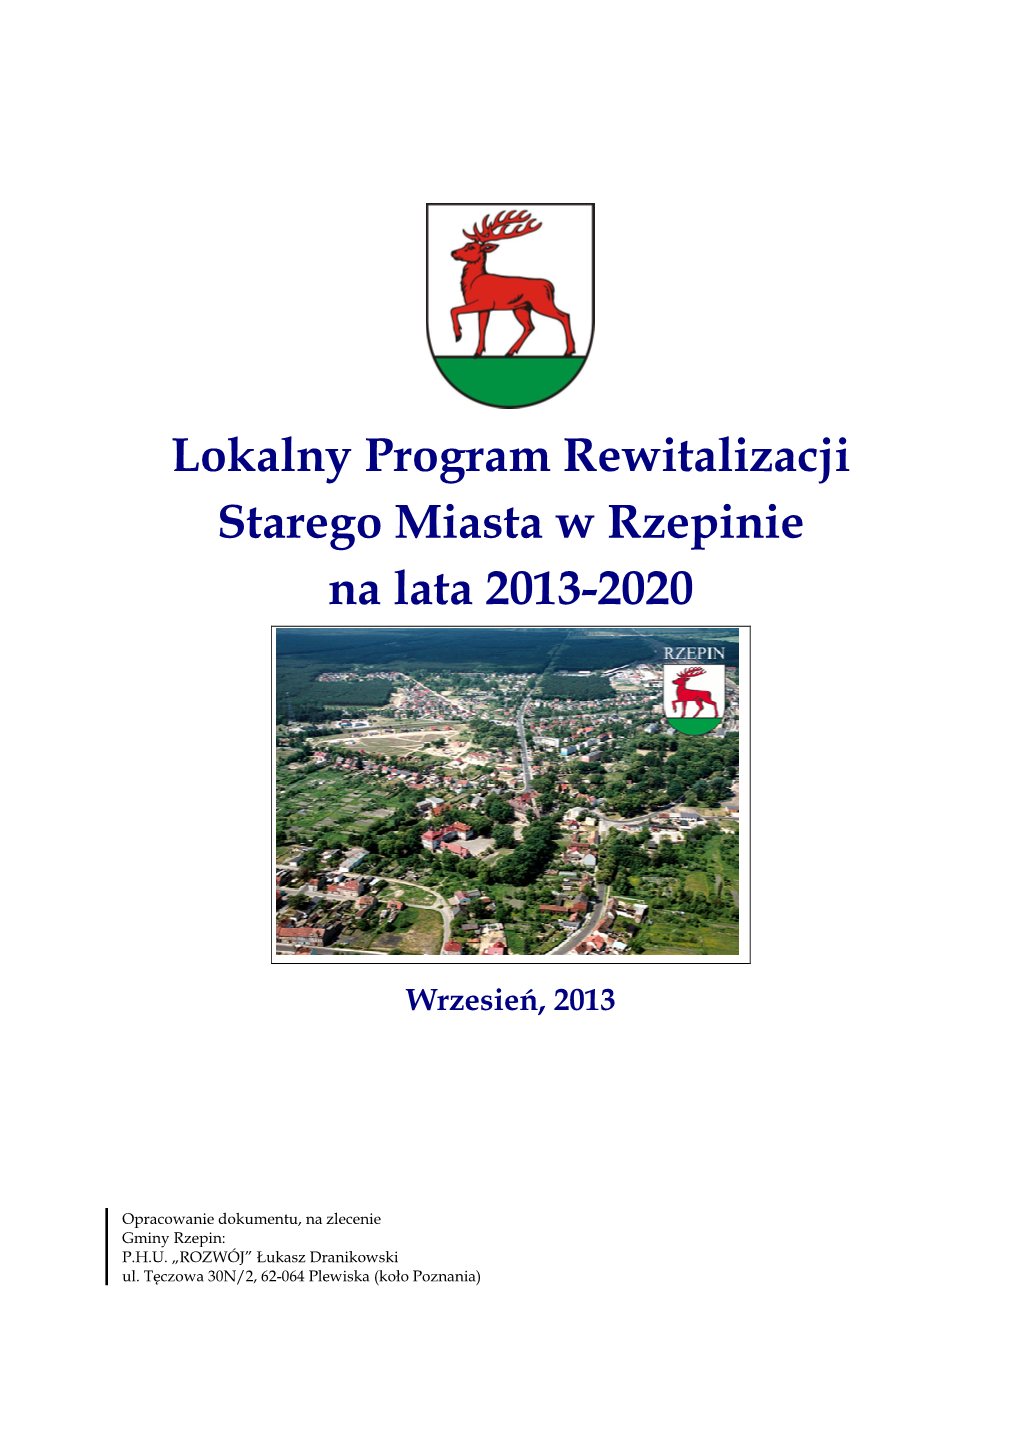 Lokalny Program Rewitalizacji Starego Miasta W Rzepinie Na Lata 2013-2020